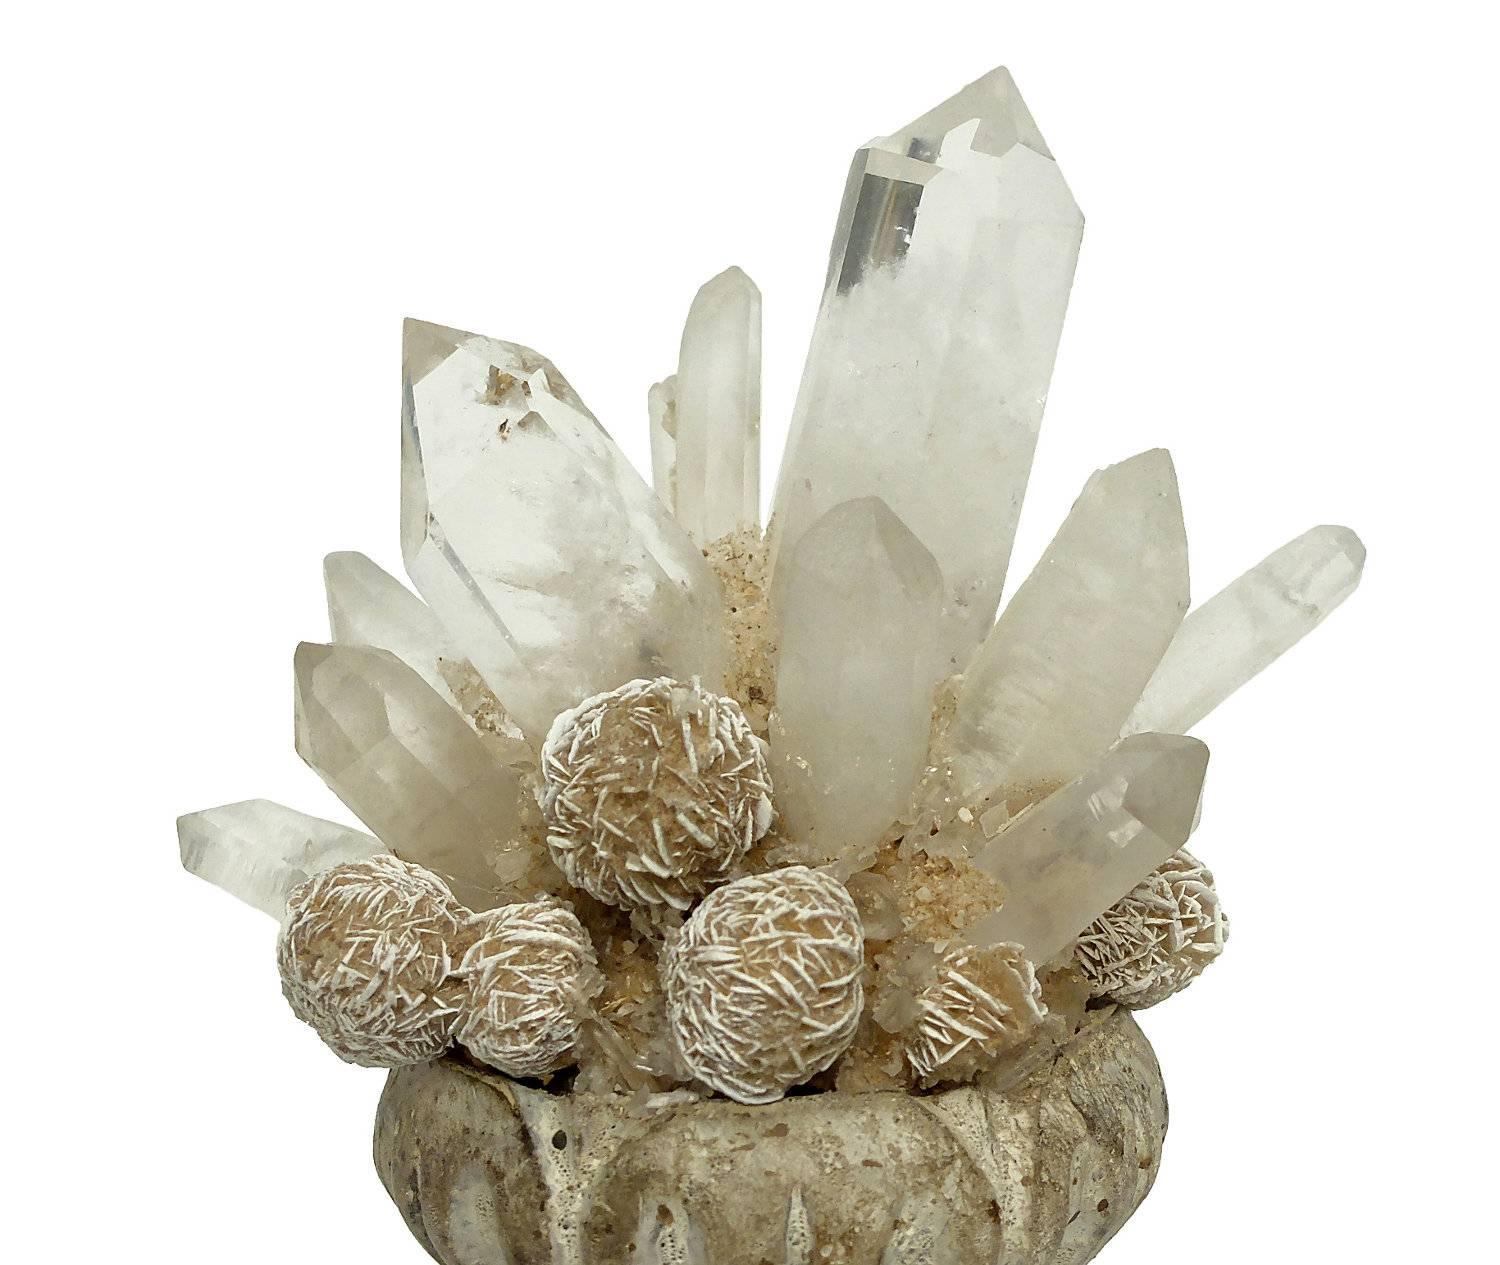 Wunderkammer Naturalia Mineral Specimen, Desert Rose and Rock Crystal 1